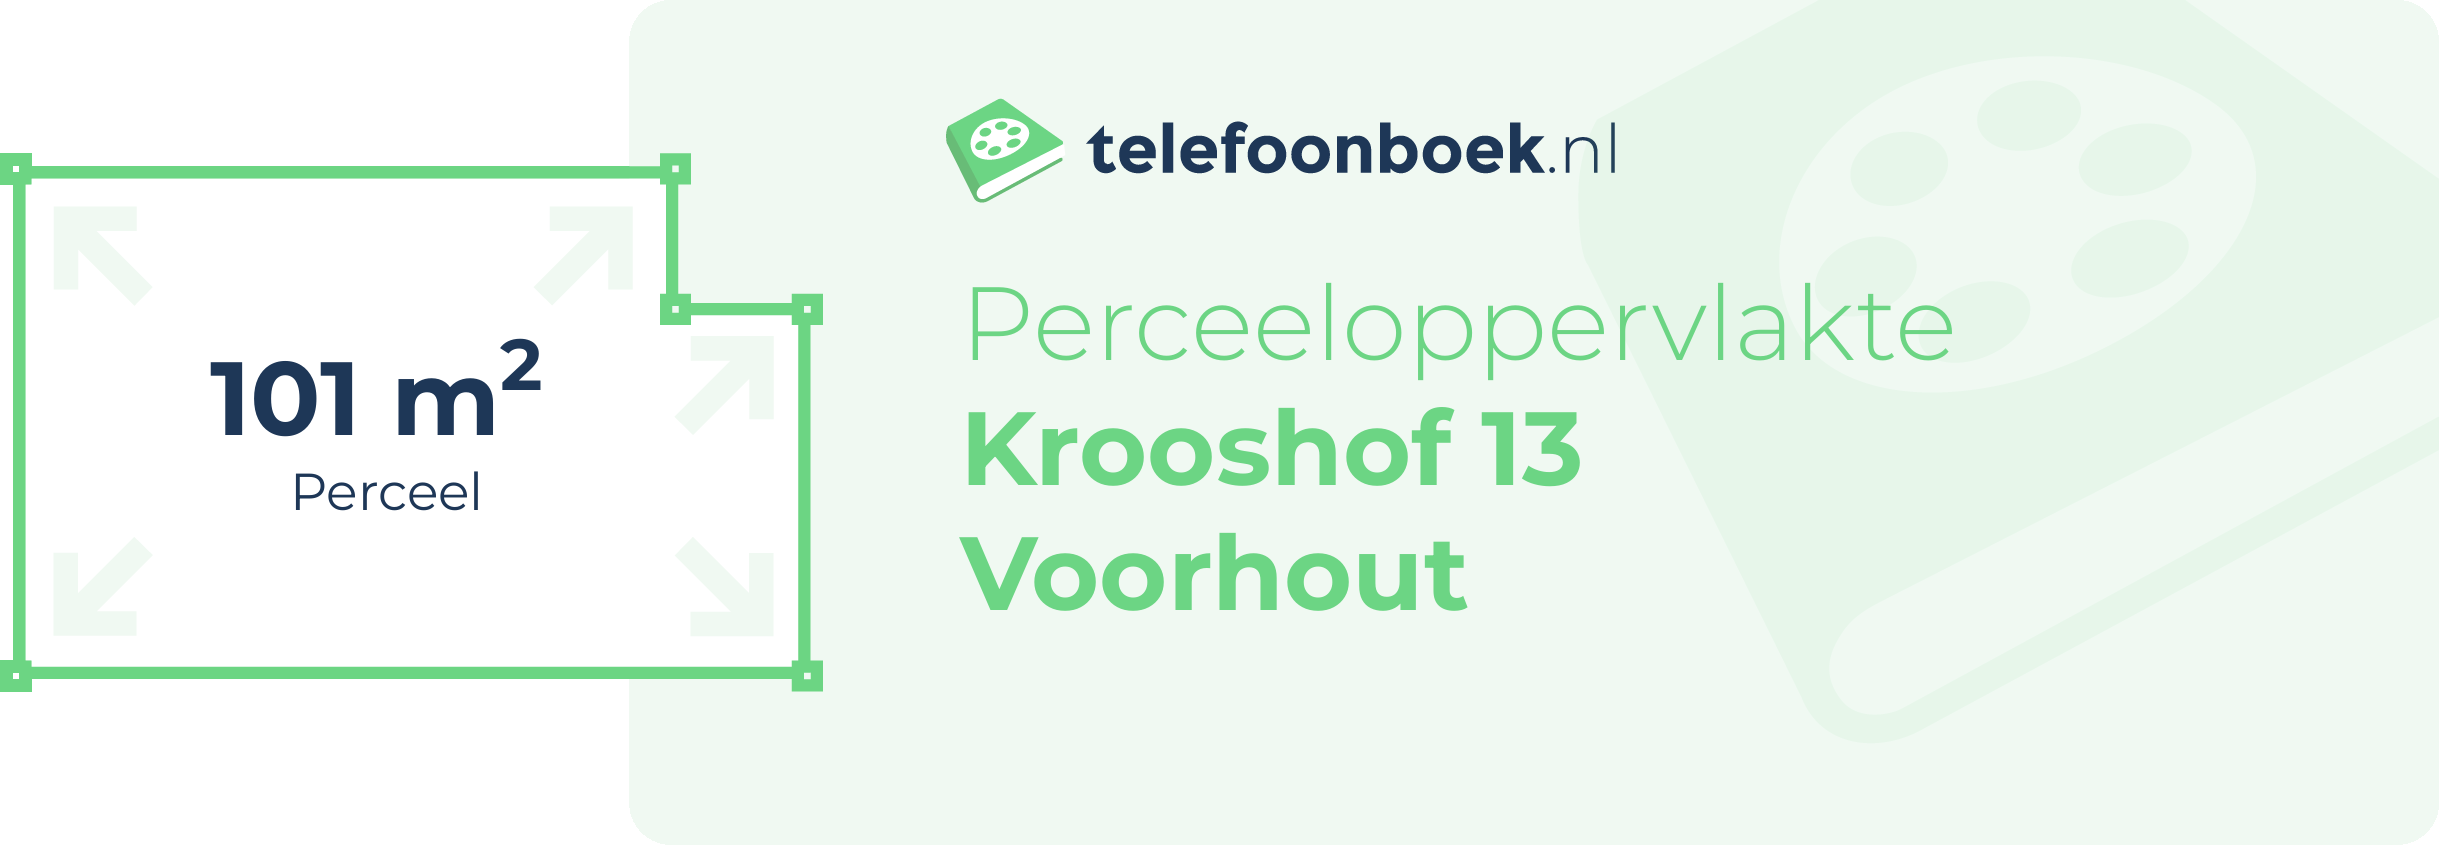 Perceeloppervlakte Krooshof 13 Voorhout